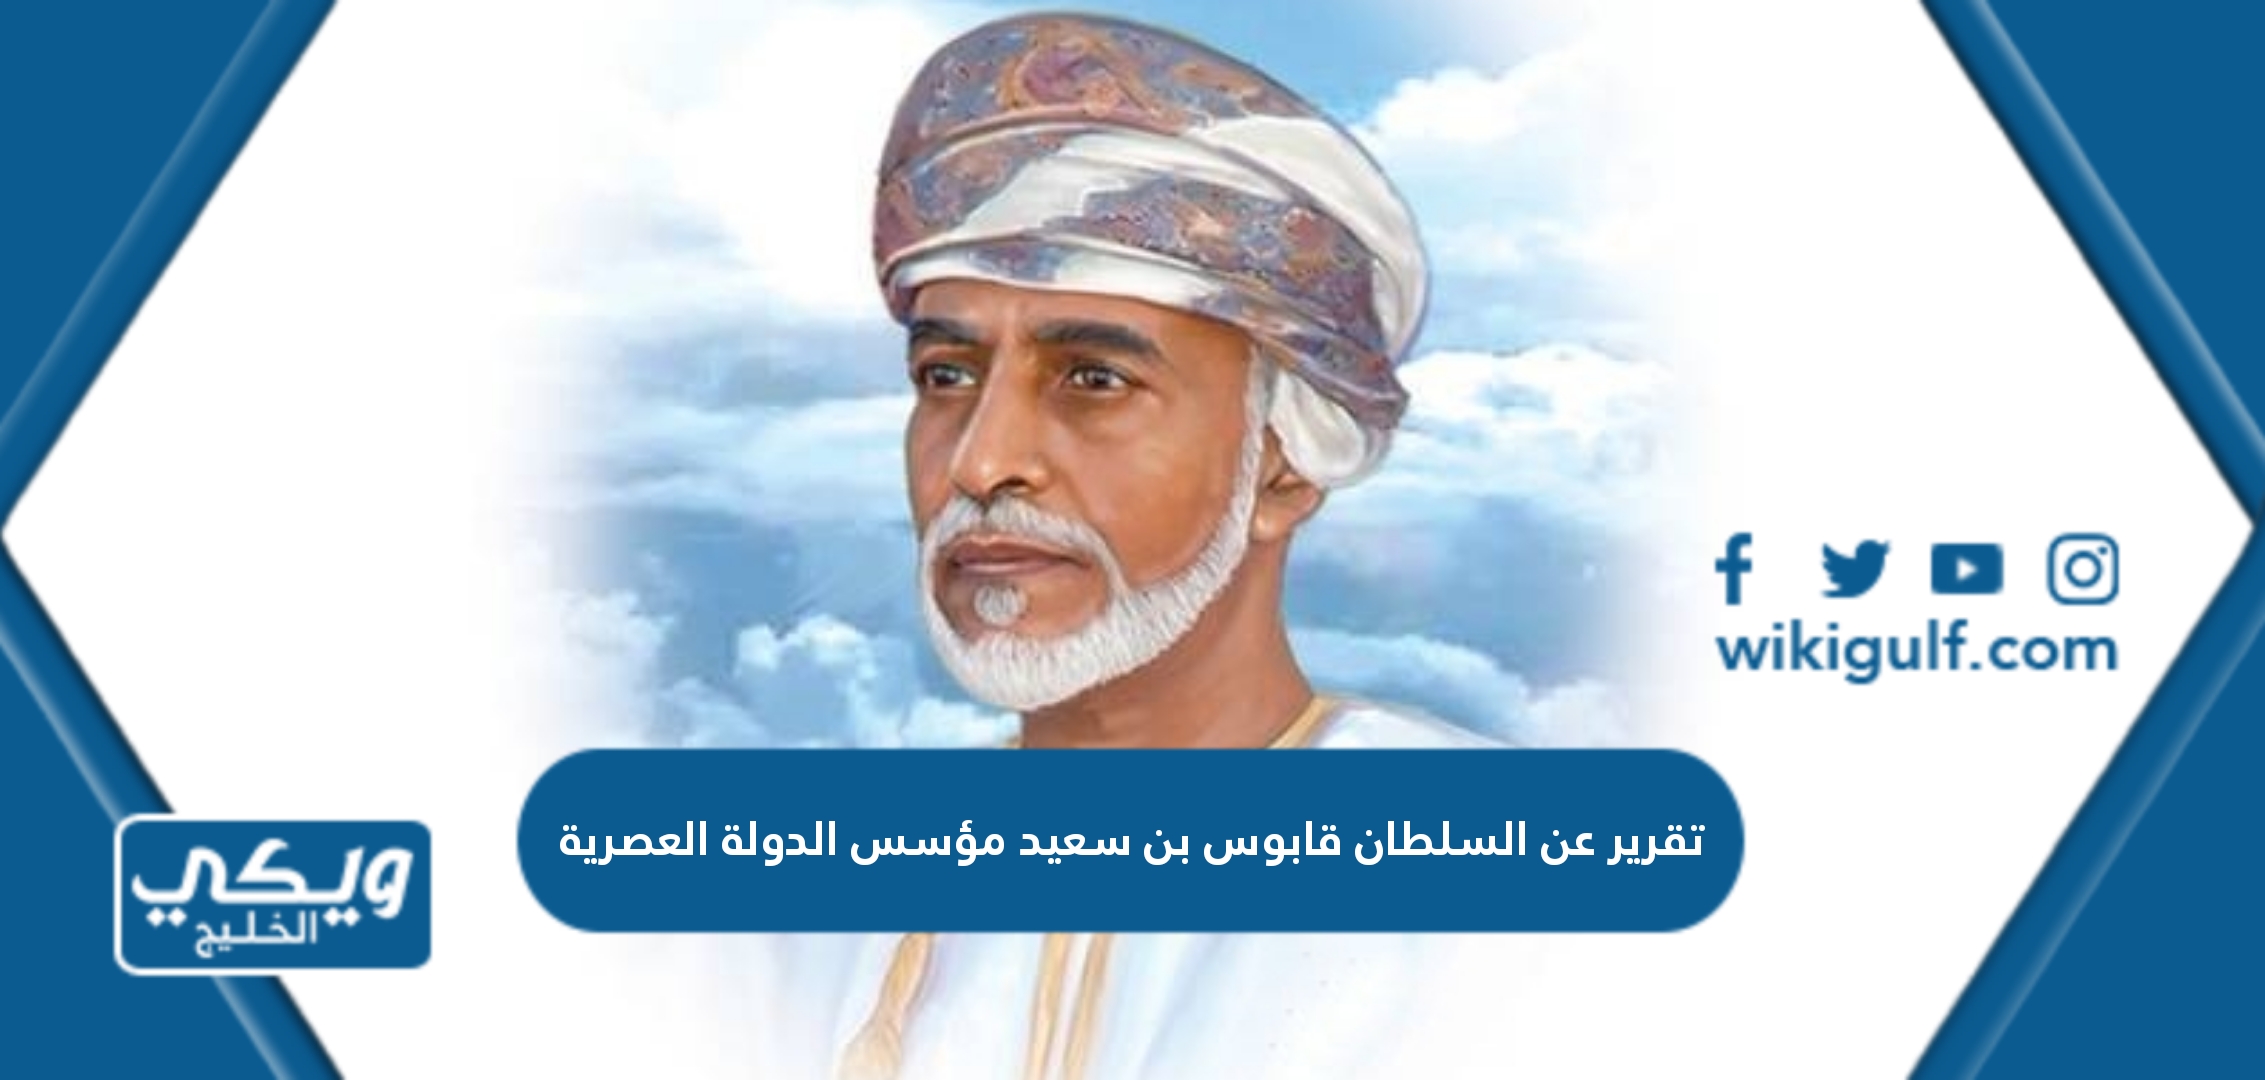 تقرير عن السلطان قابوس بن سعيد مؤسس الدولة العصرية